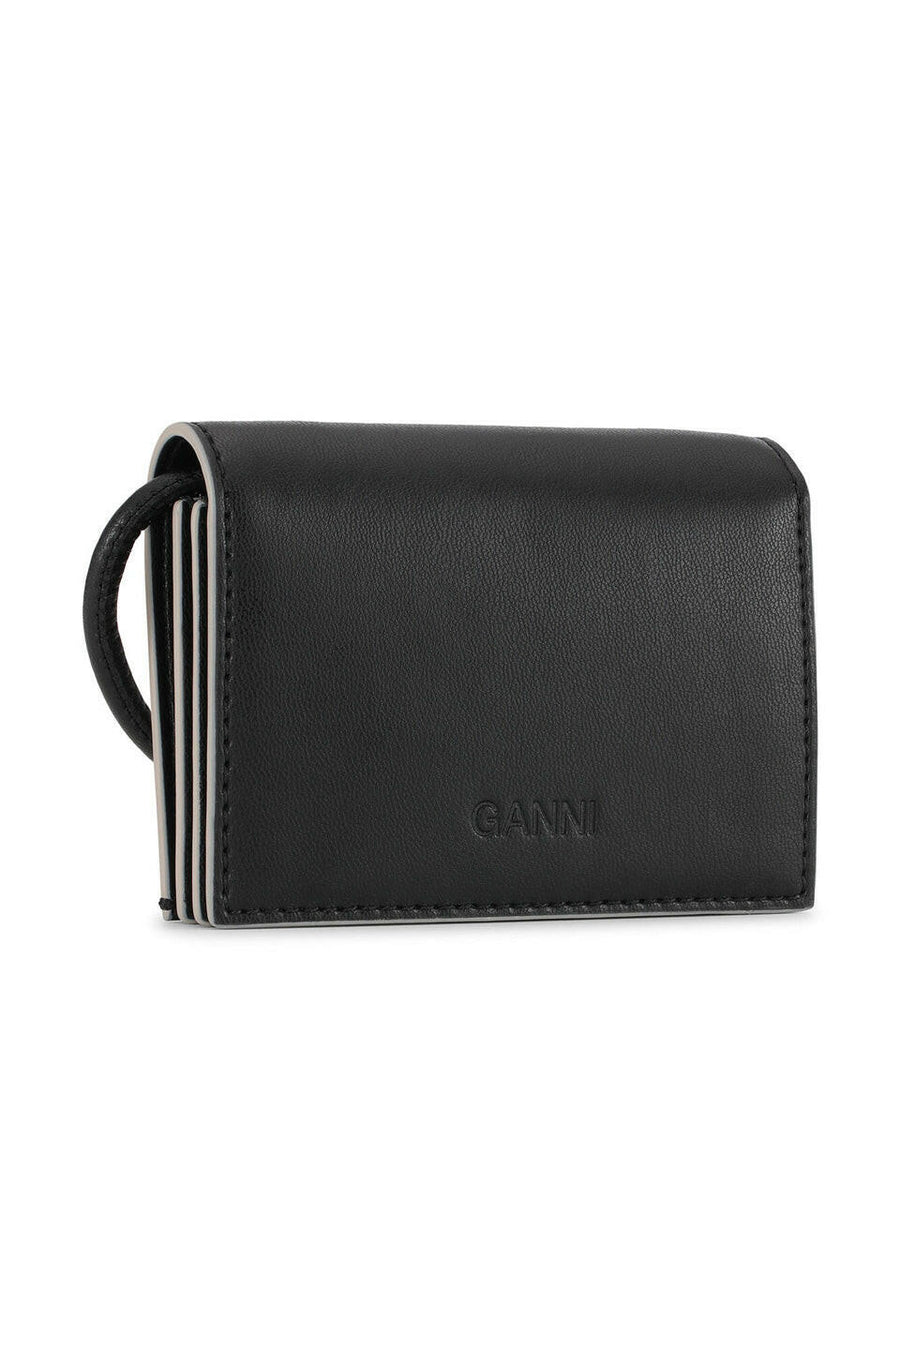 ganni bou wallet on strap black